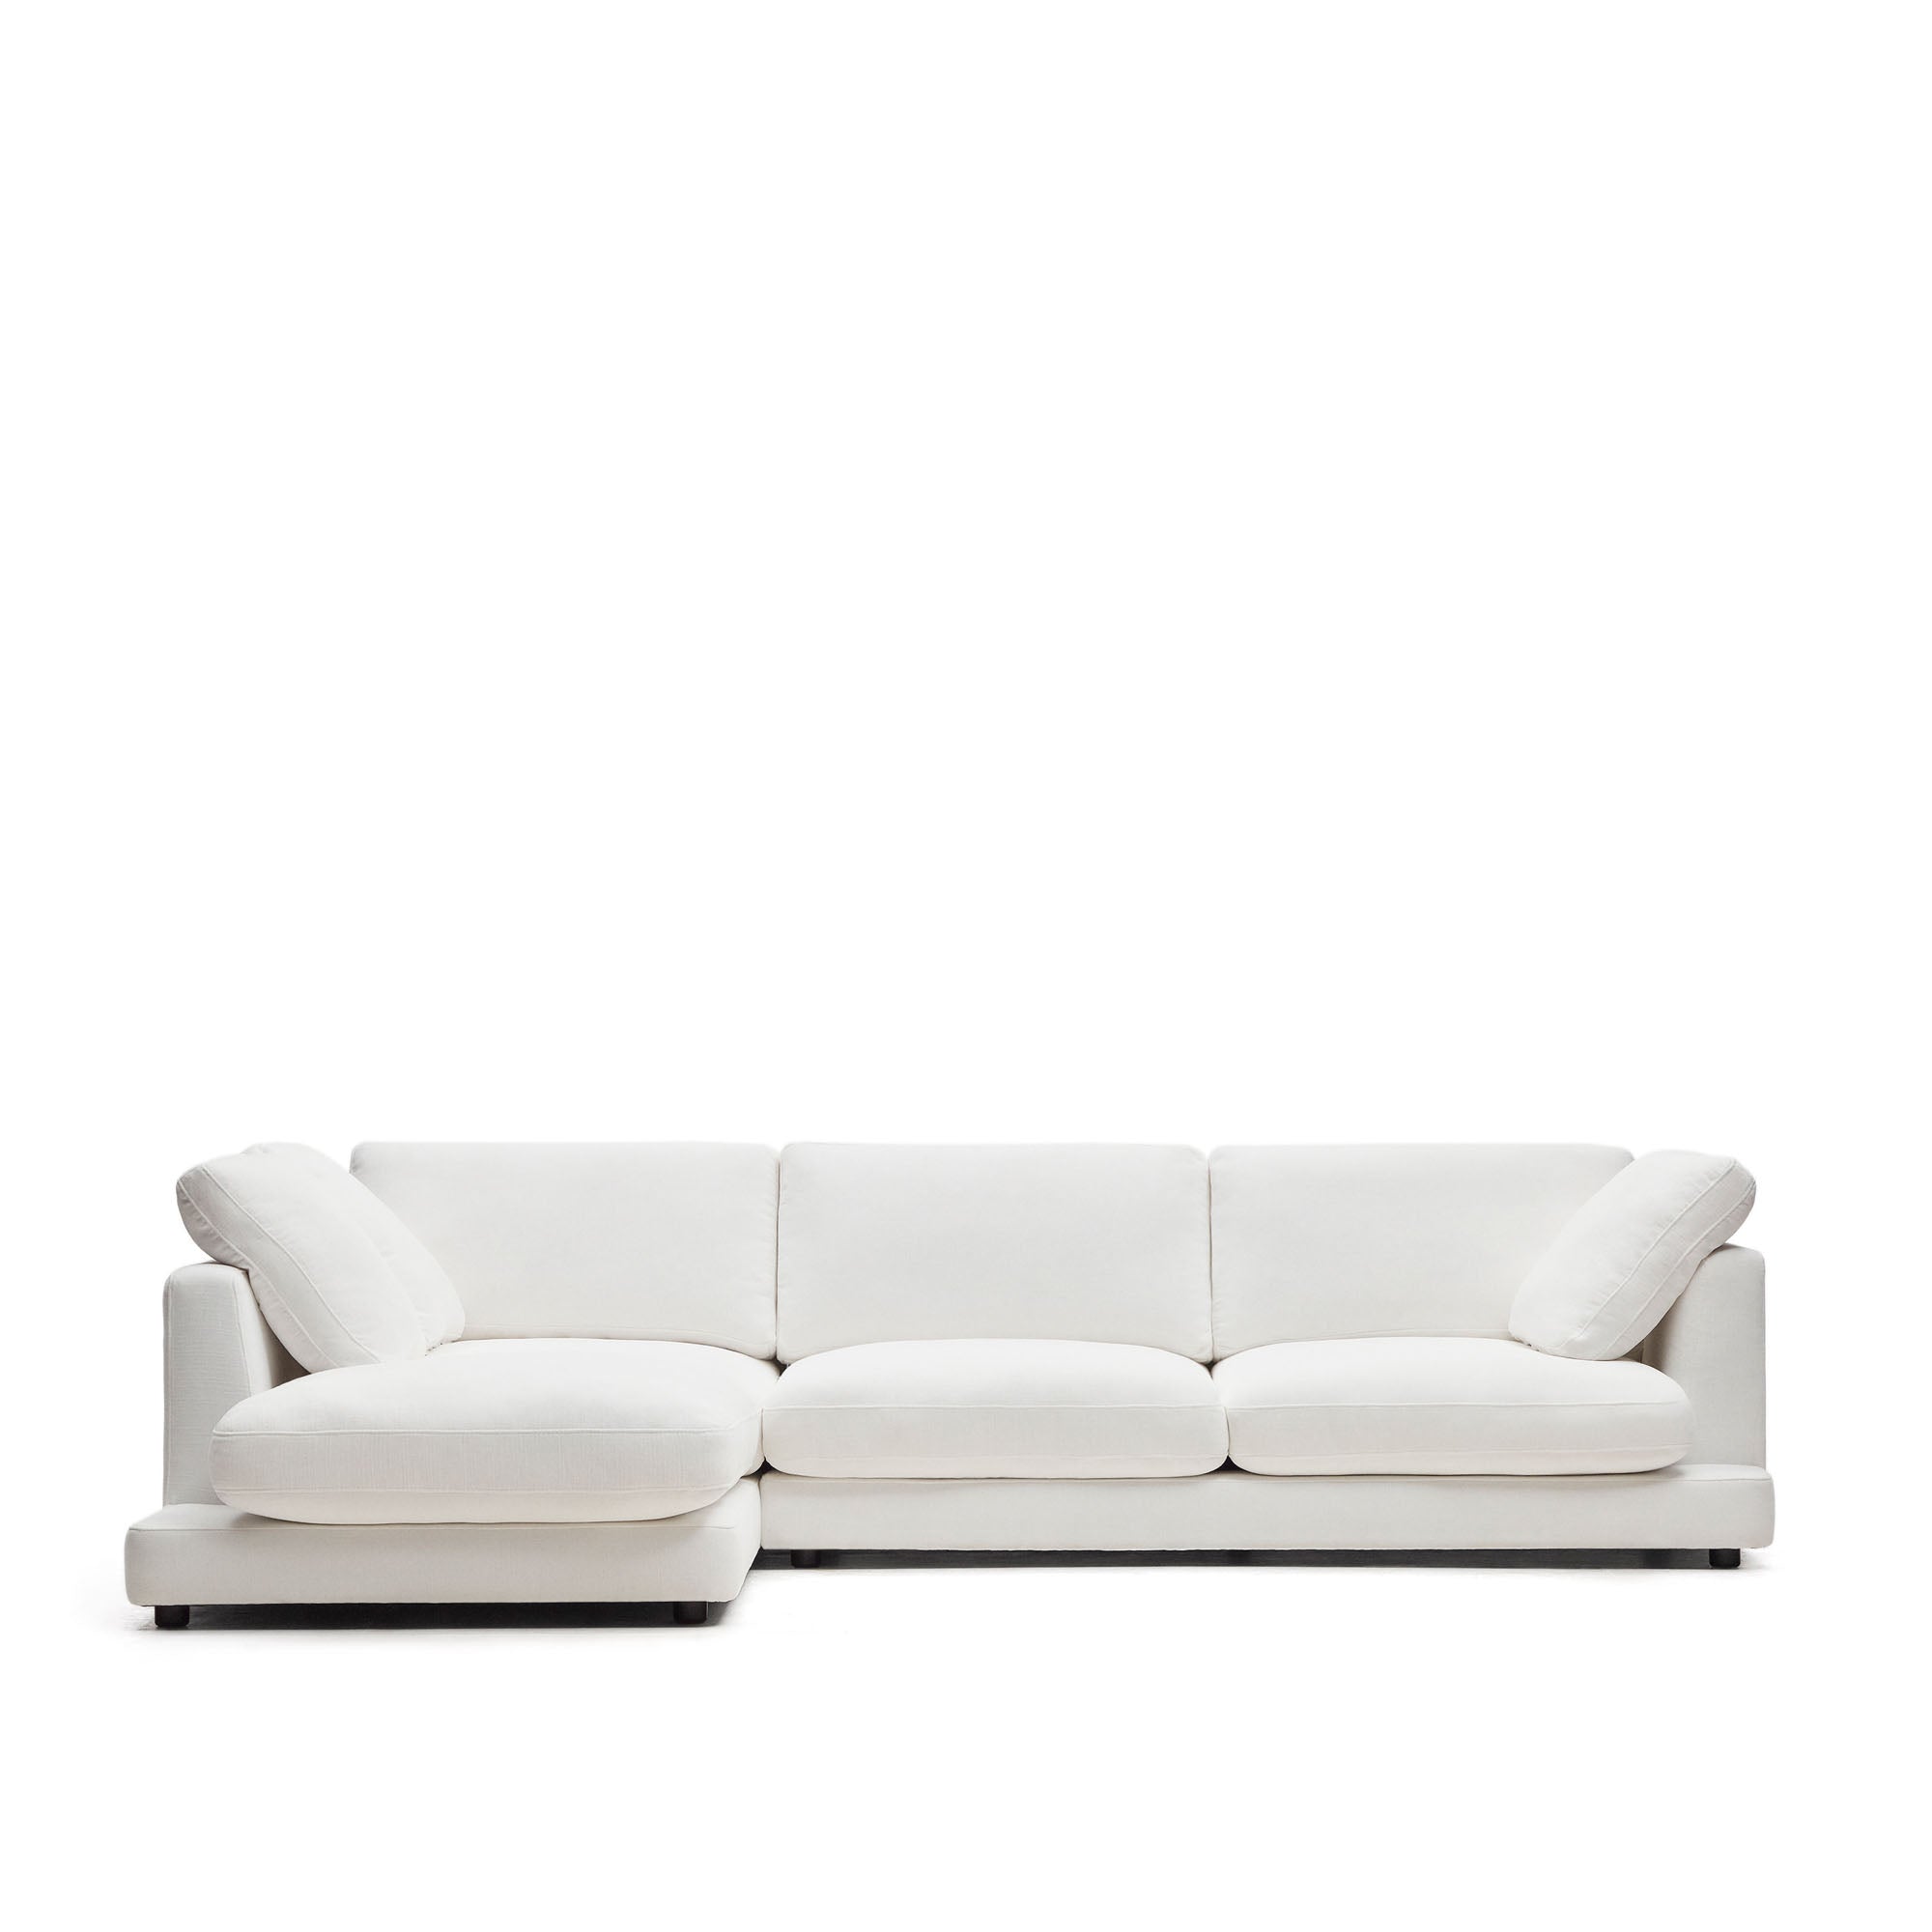 Gala 4 személyes kanapé bal oldali fekvőfotellel, fehér színben, 300 cm